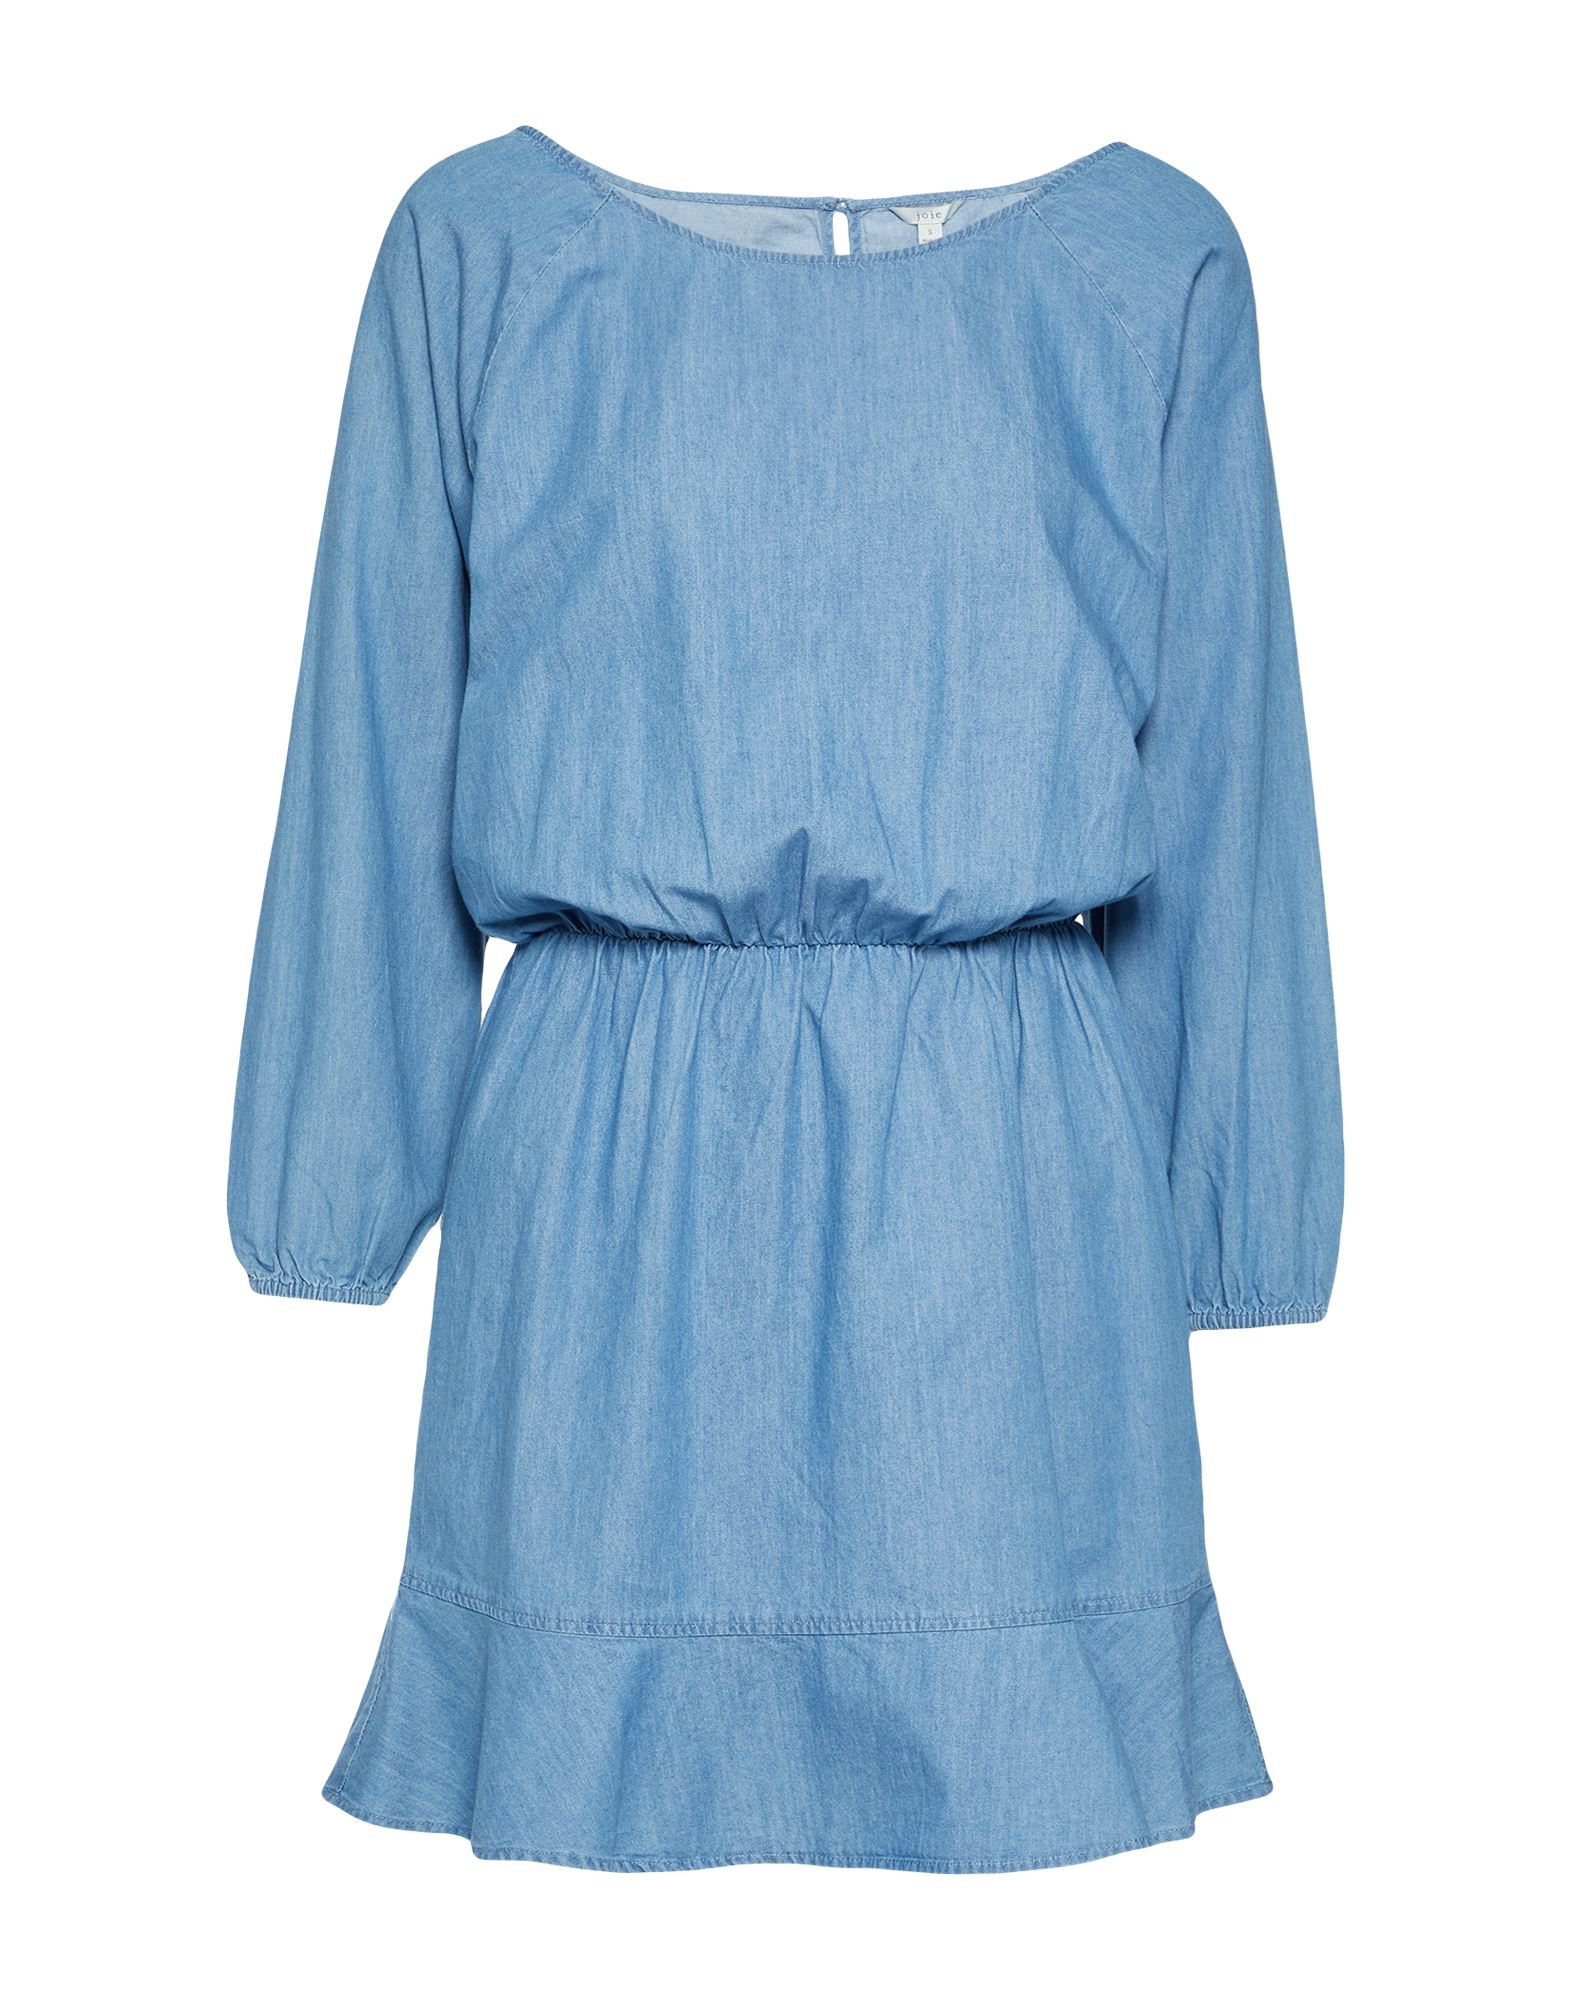 JOIE JOIE WOMAN SHORT DRESS BLUE SIZE XL COTTON,15101254EJ 4